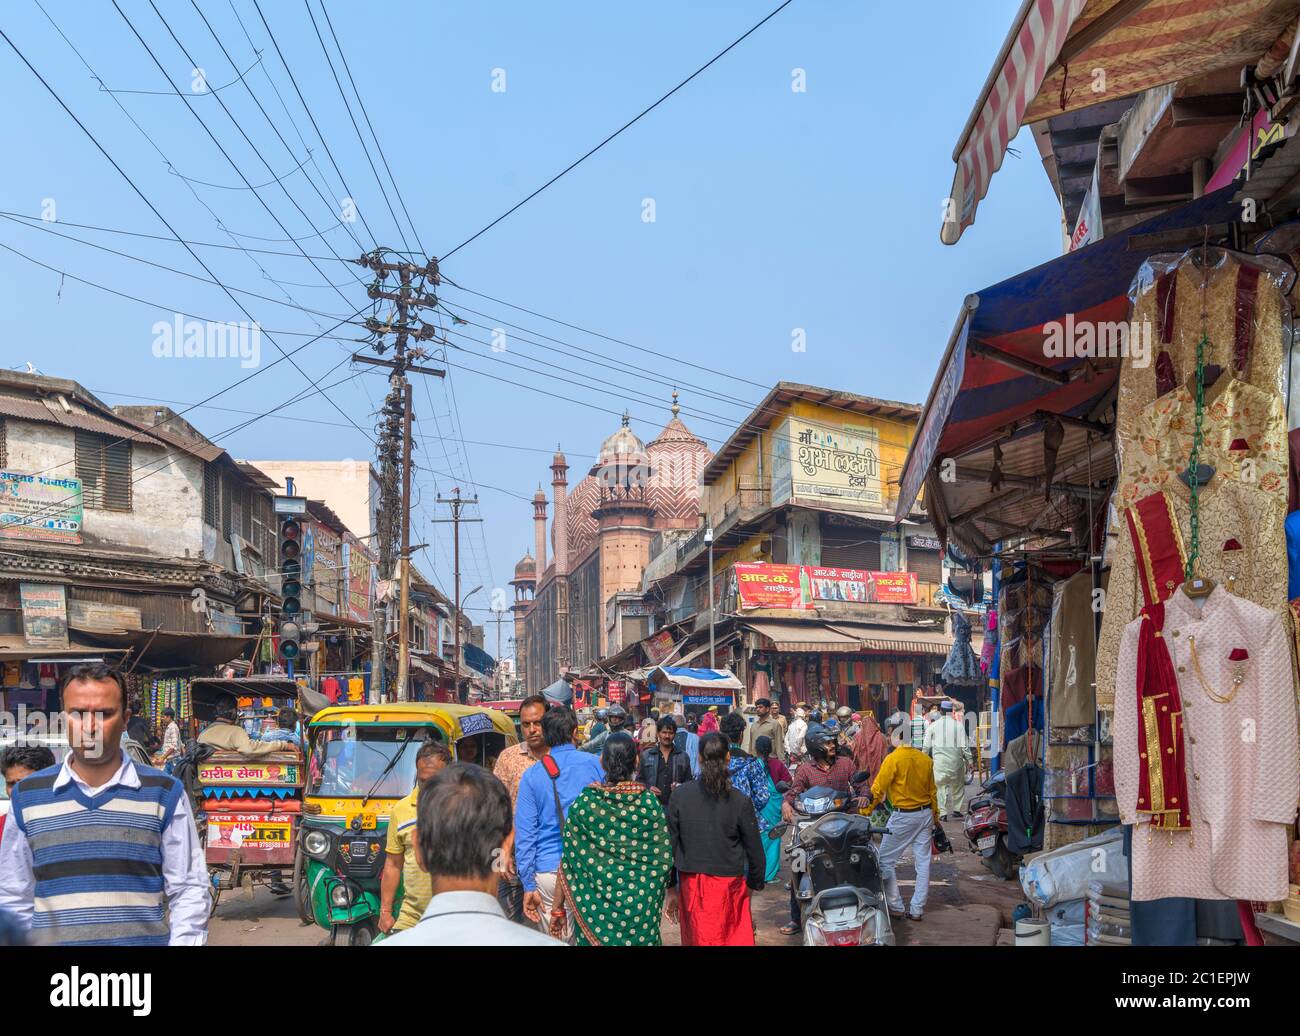 Geschäfte und Verkaufsstände an einer Straße, die zu Jama Masjid (Jama-Moschee), Agra, Uttar Pradesh, Indien führt Stockfoto